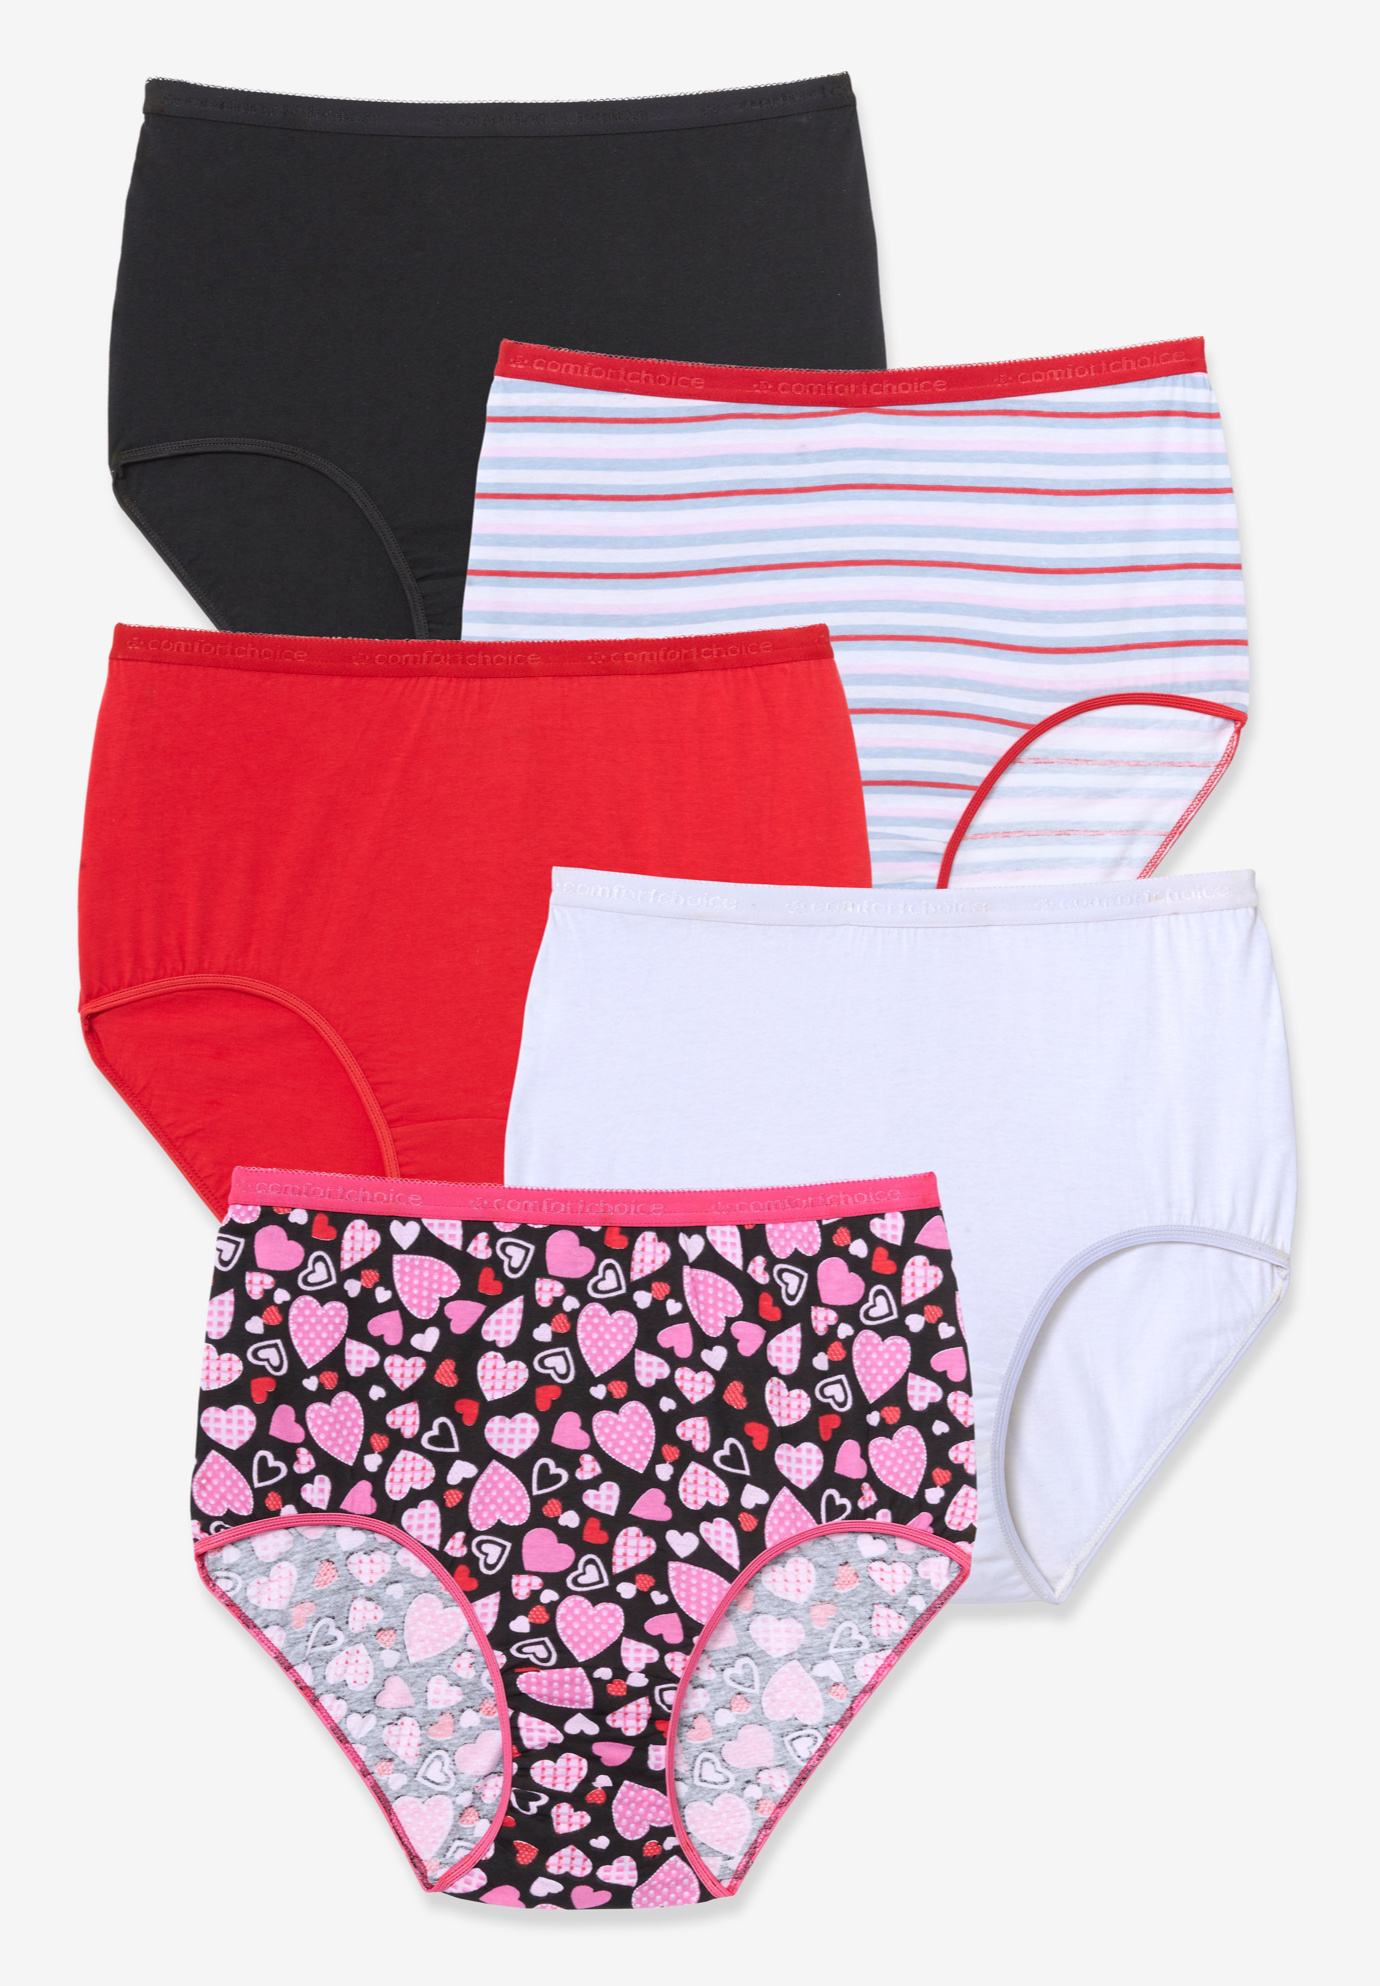 Comfort Choice Women's Plus Size Cotton Brief 5-Pack Underwear